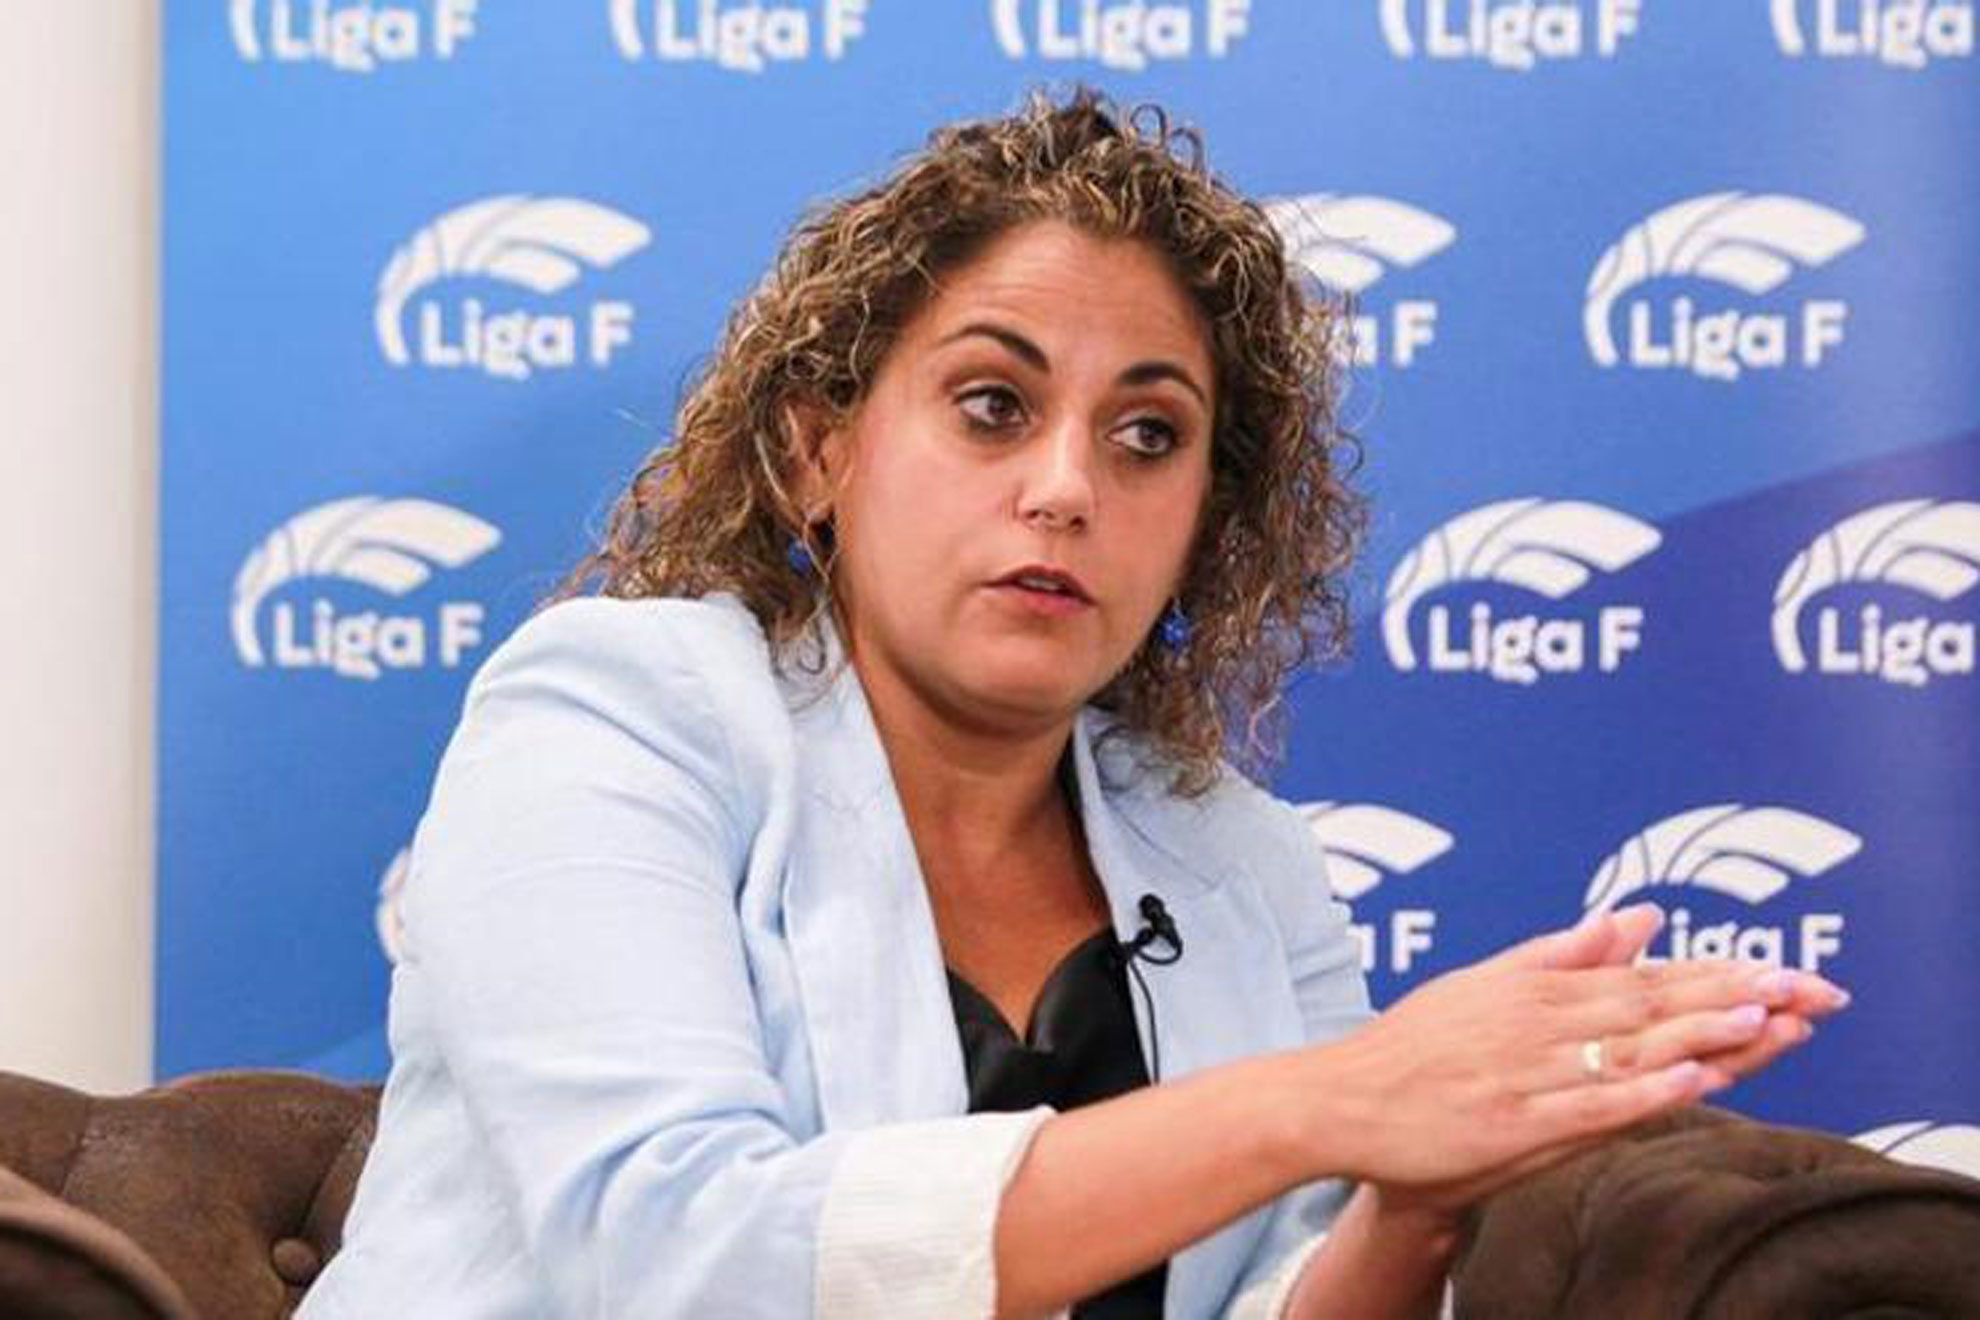 La Liga F denuncia a Rubiales: "Su actitud es inadmisible y repugnante"